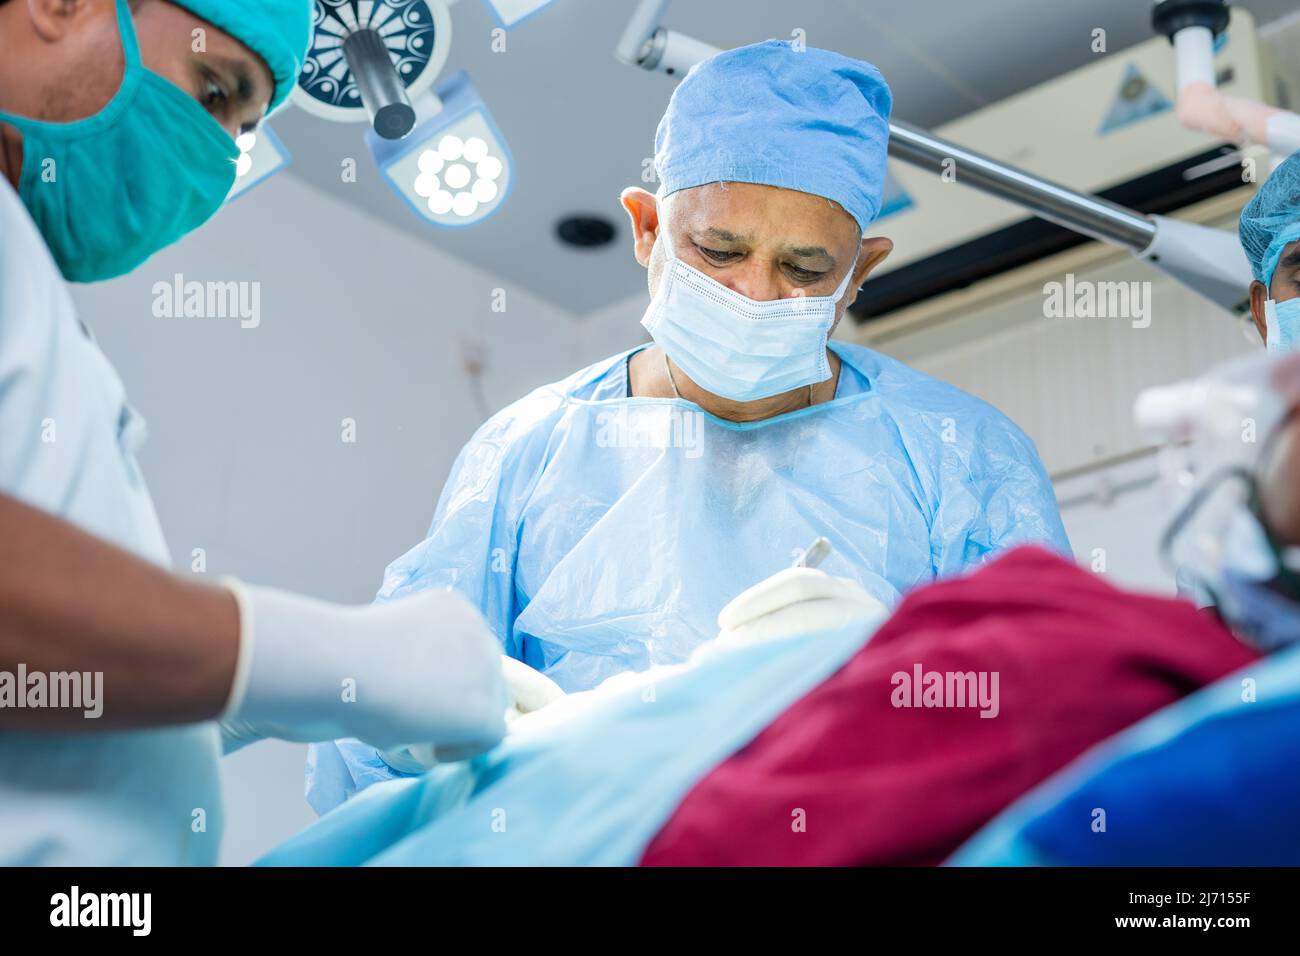 Konzentrierter Chirurg, der mit der Operation an kranken Patienten im Operationssaal beschäftigt ist - Konzept der Fachkompetenz, der spezialisierten und professionellen Behandlung Stockfoto